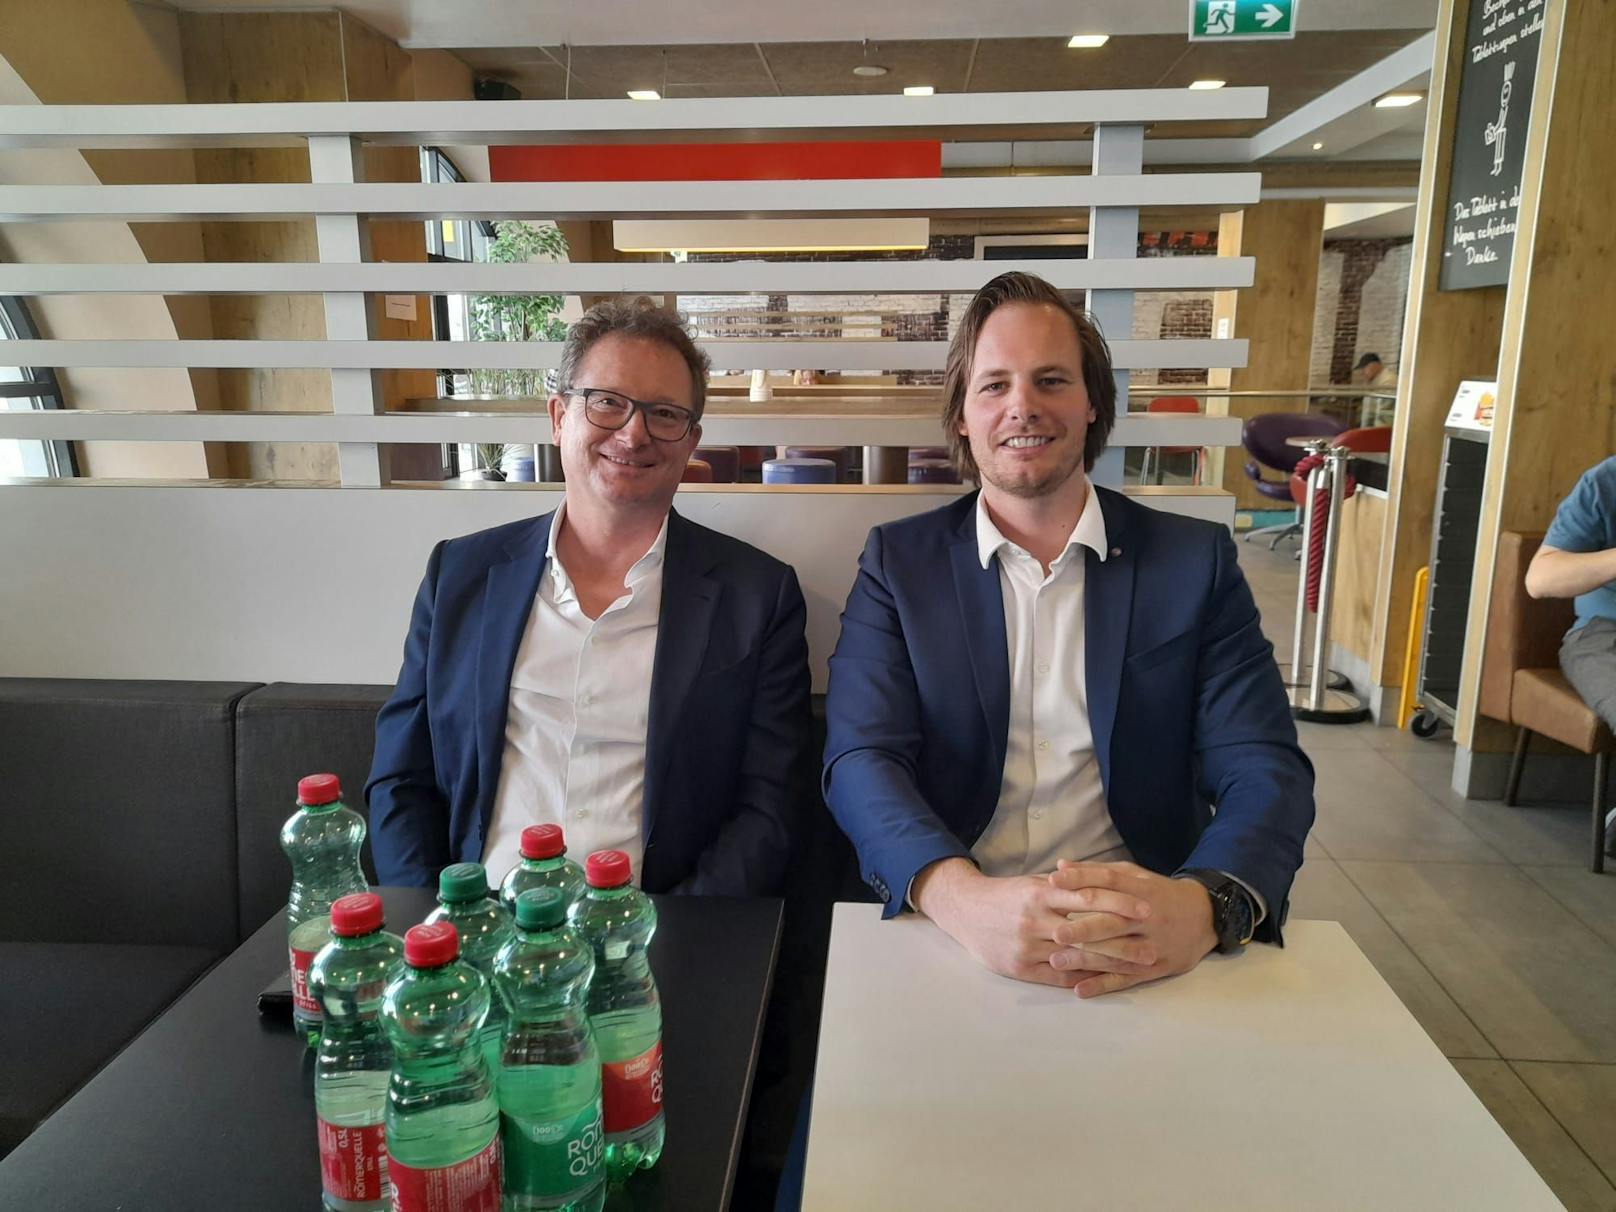 Der langjährige Franchisenehmer Gerhard Fuchs übernimmt in Linz vier neue Filialen, Richard Jäger hat den Taubenmarkt übernommen, plant einige Änderungen.